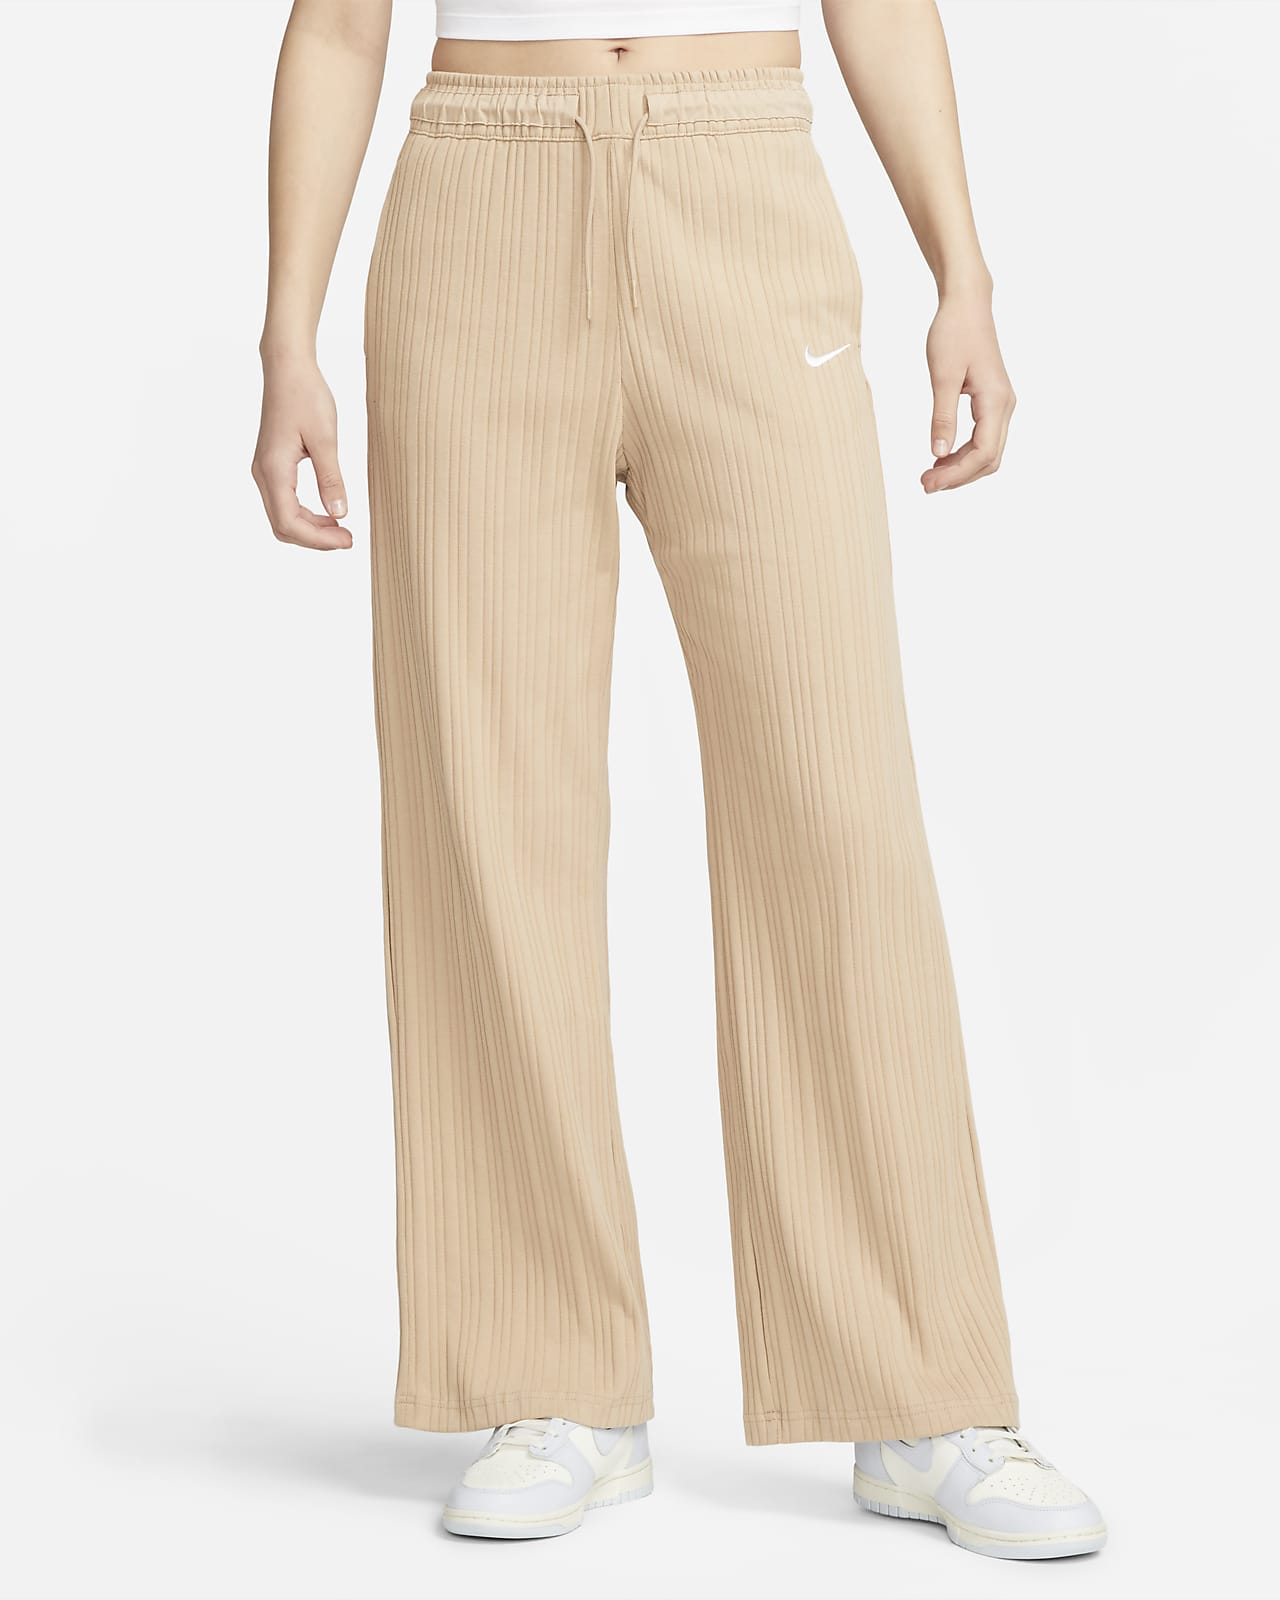 Γυναικείο ζέρσεϊ παντελόνι με φαρδιά μπατζάκια σε ριμπ ύφανση Nike Sportswear